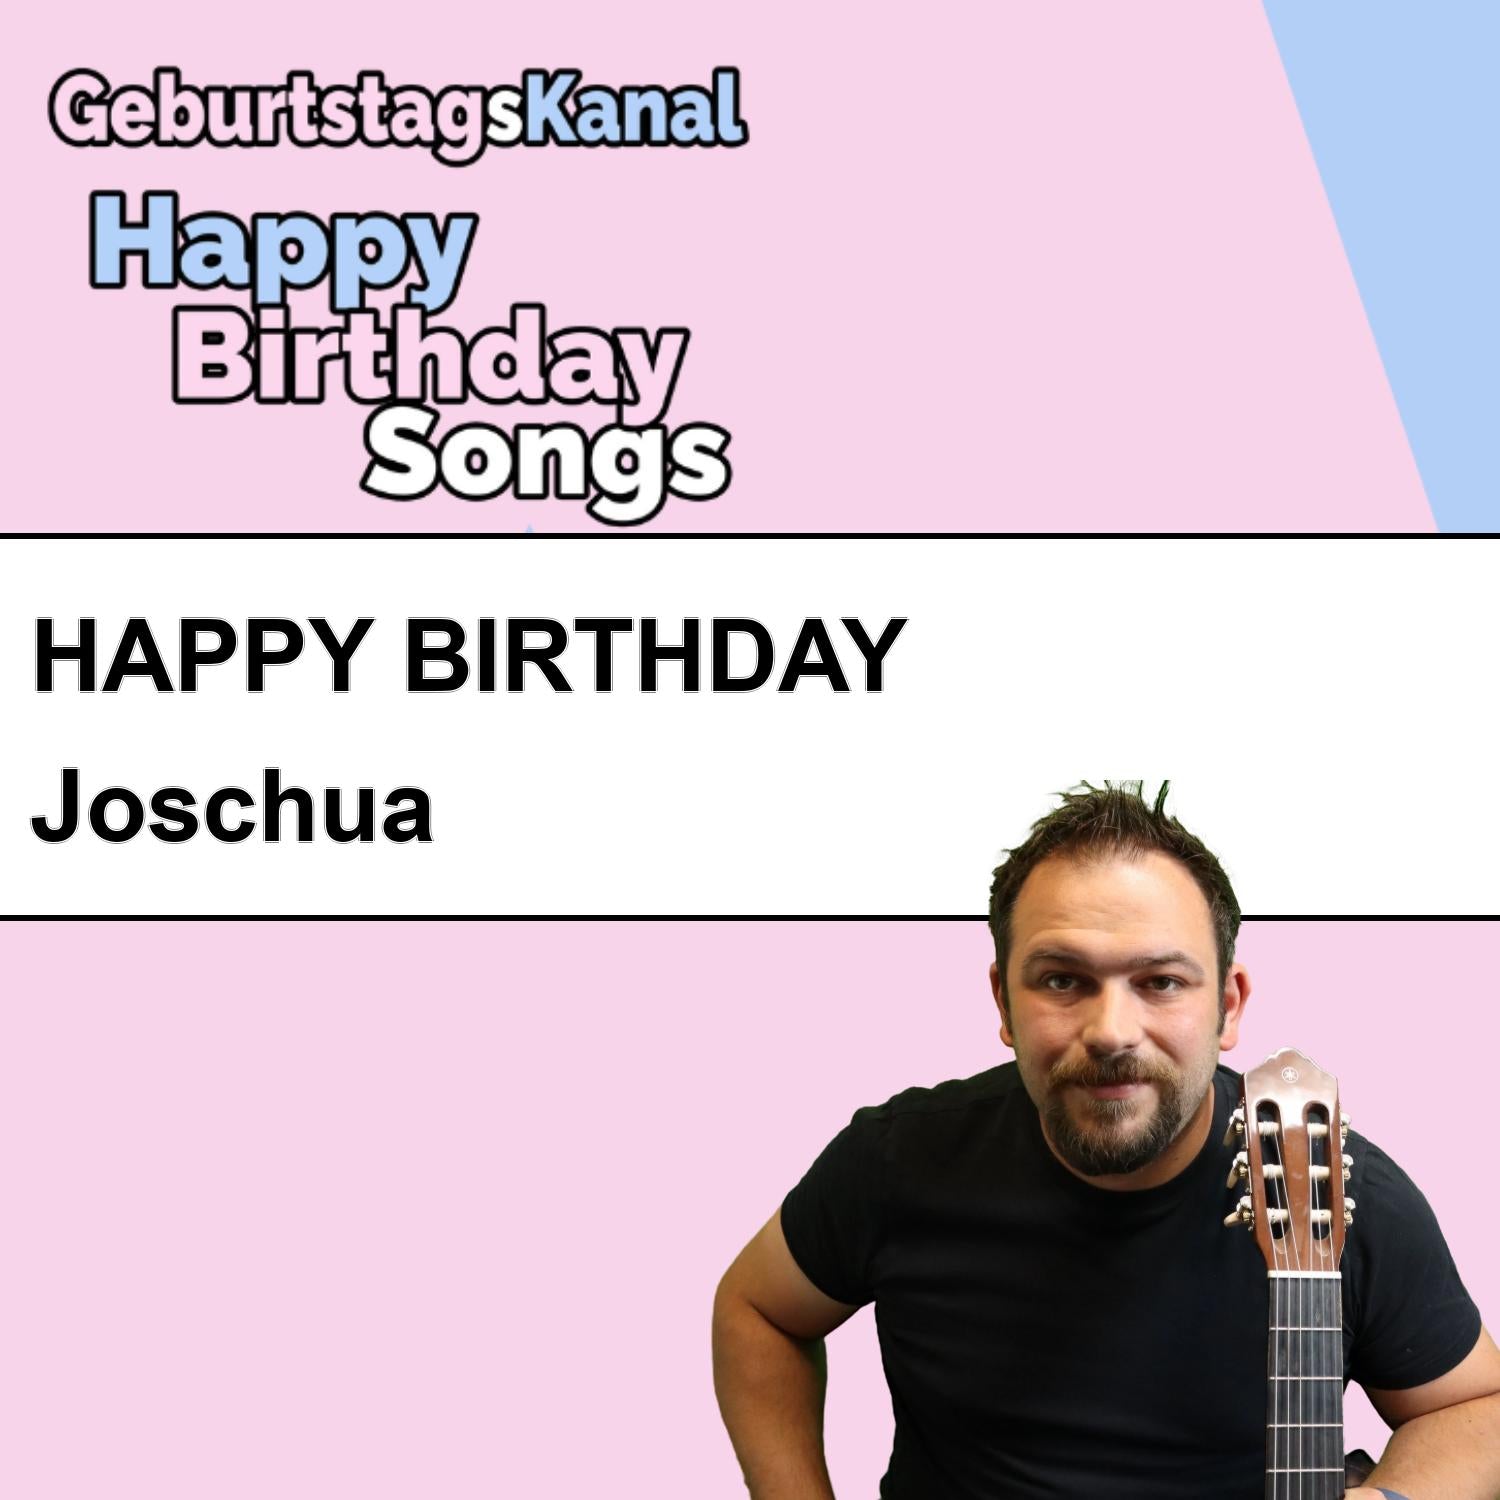 Produktbild Happy Birthday to you Joschua mit Wunschgrußbotschaft